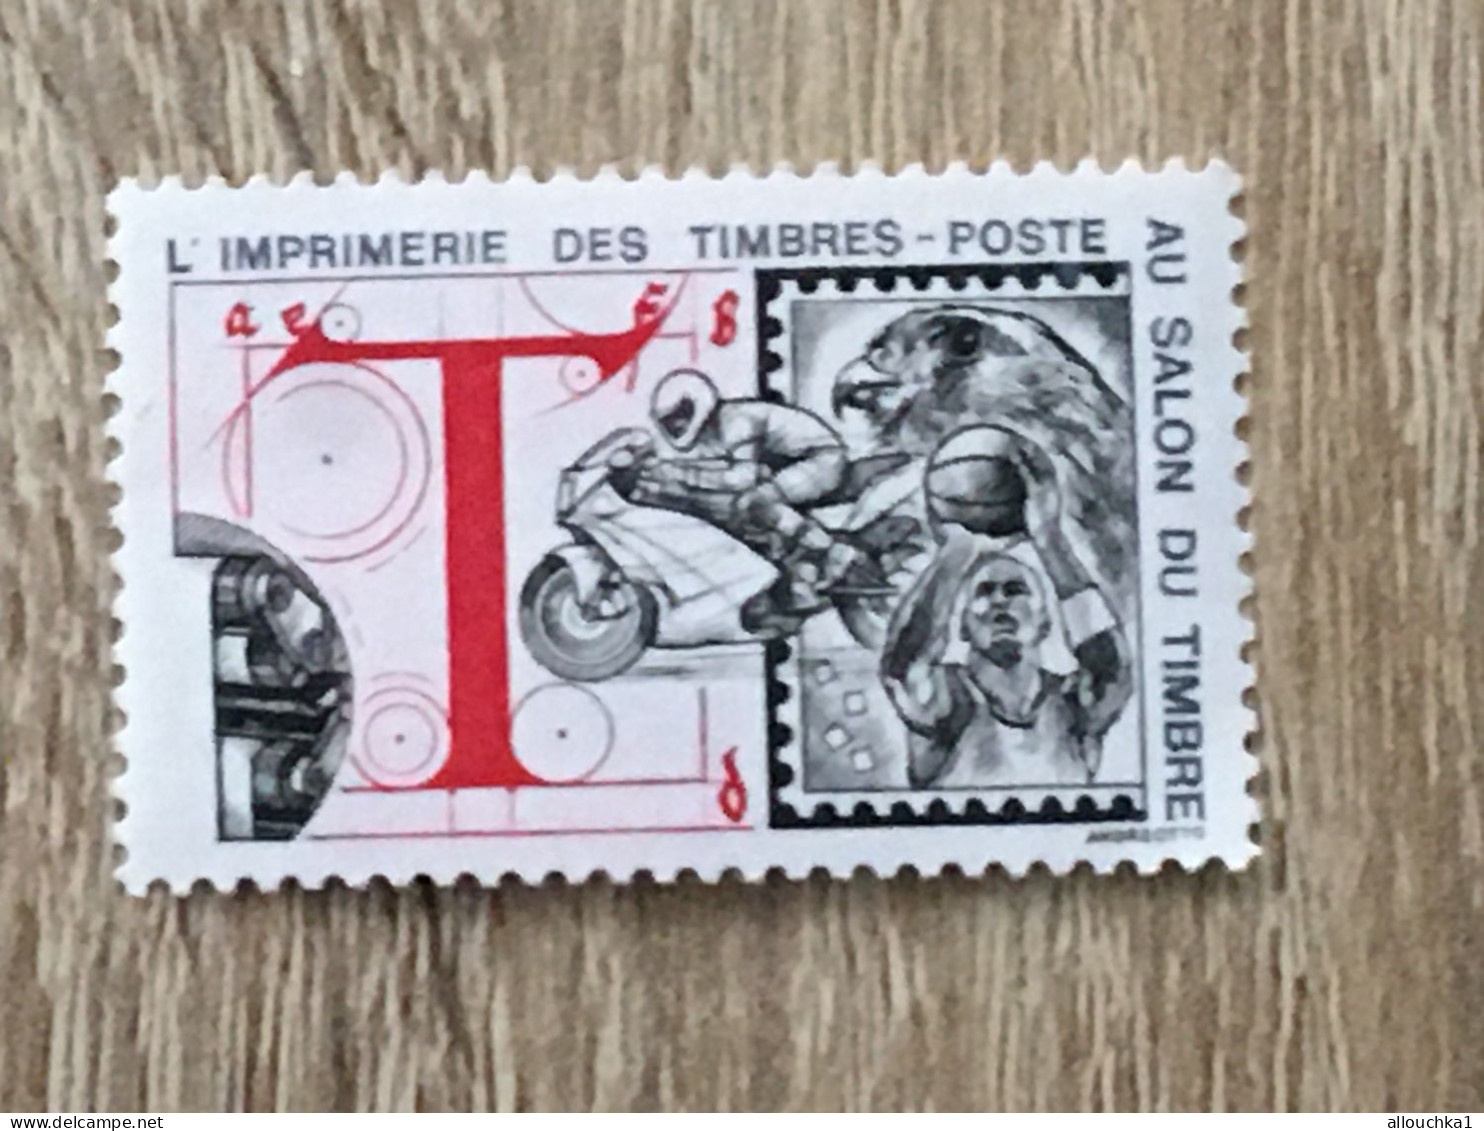 Imprimerie Timbres Poste Au Salon Du Timbre-2 Timbres Vignette**Expo-Philatélique-Erinnophilie-[E]Stamp-Sticker-Viñeta - Filatelistische Tentoonstellingen